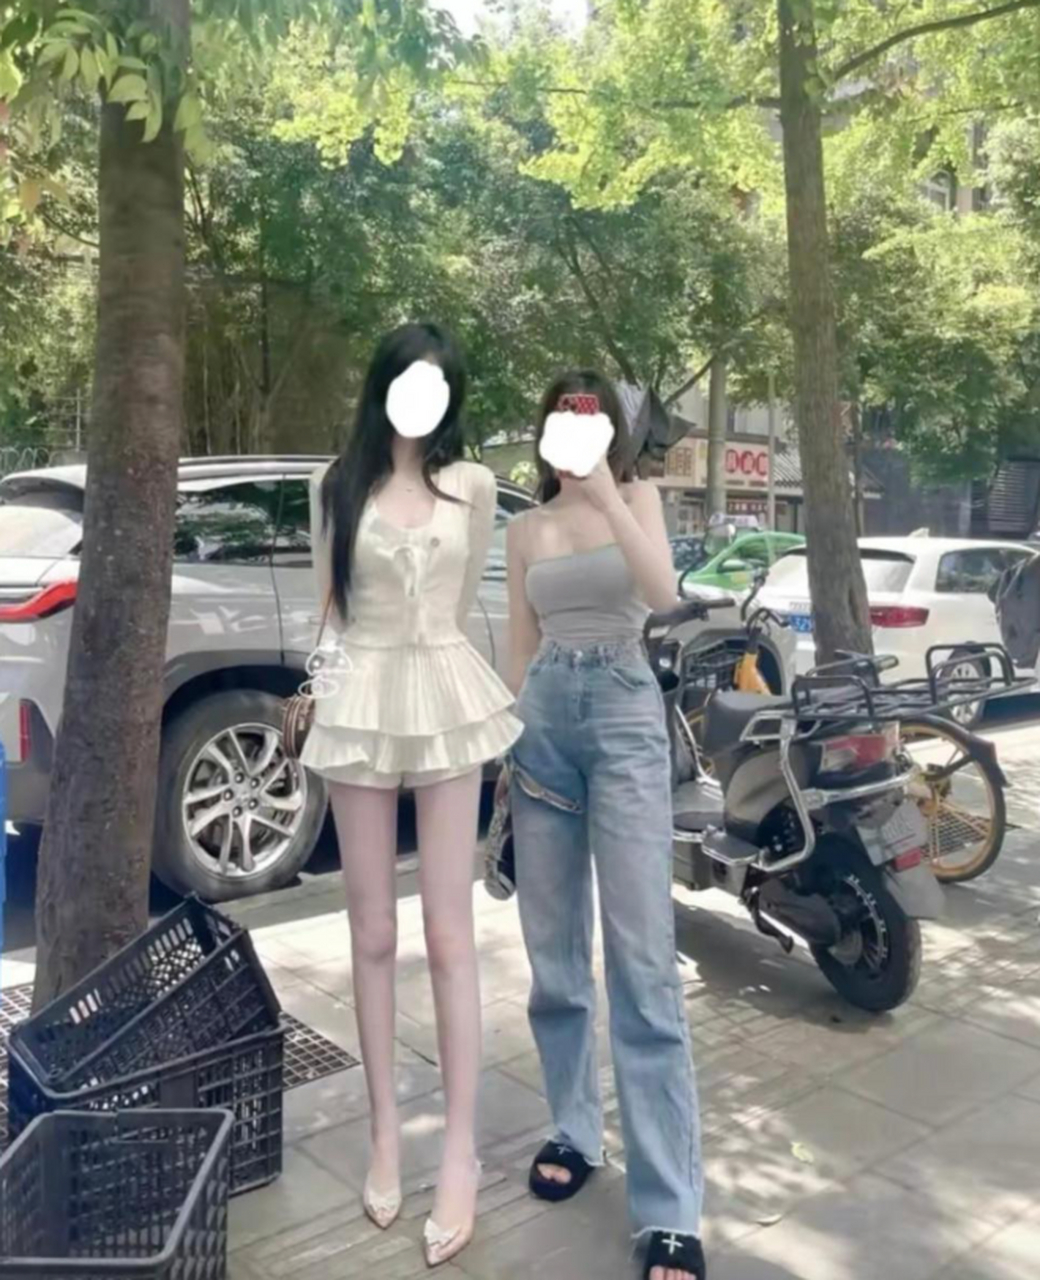 左边的是我的网恋女友,右边的是女友闺蜜,我怀疑她俩把腿p图了,但是我